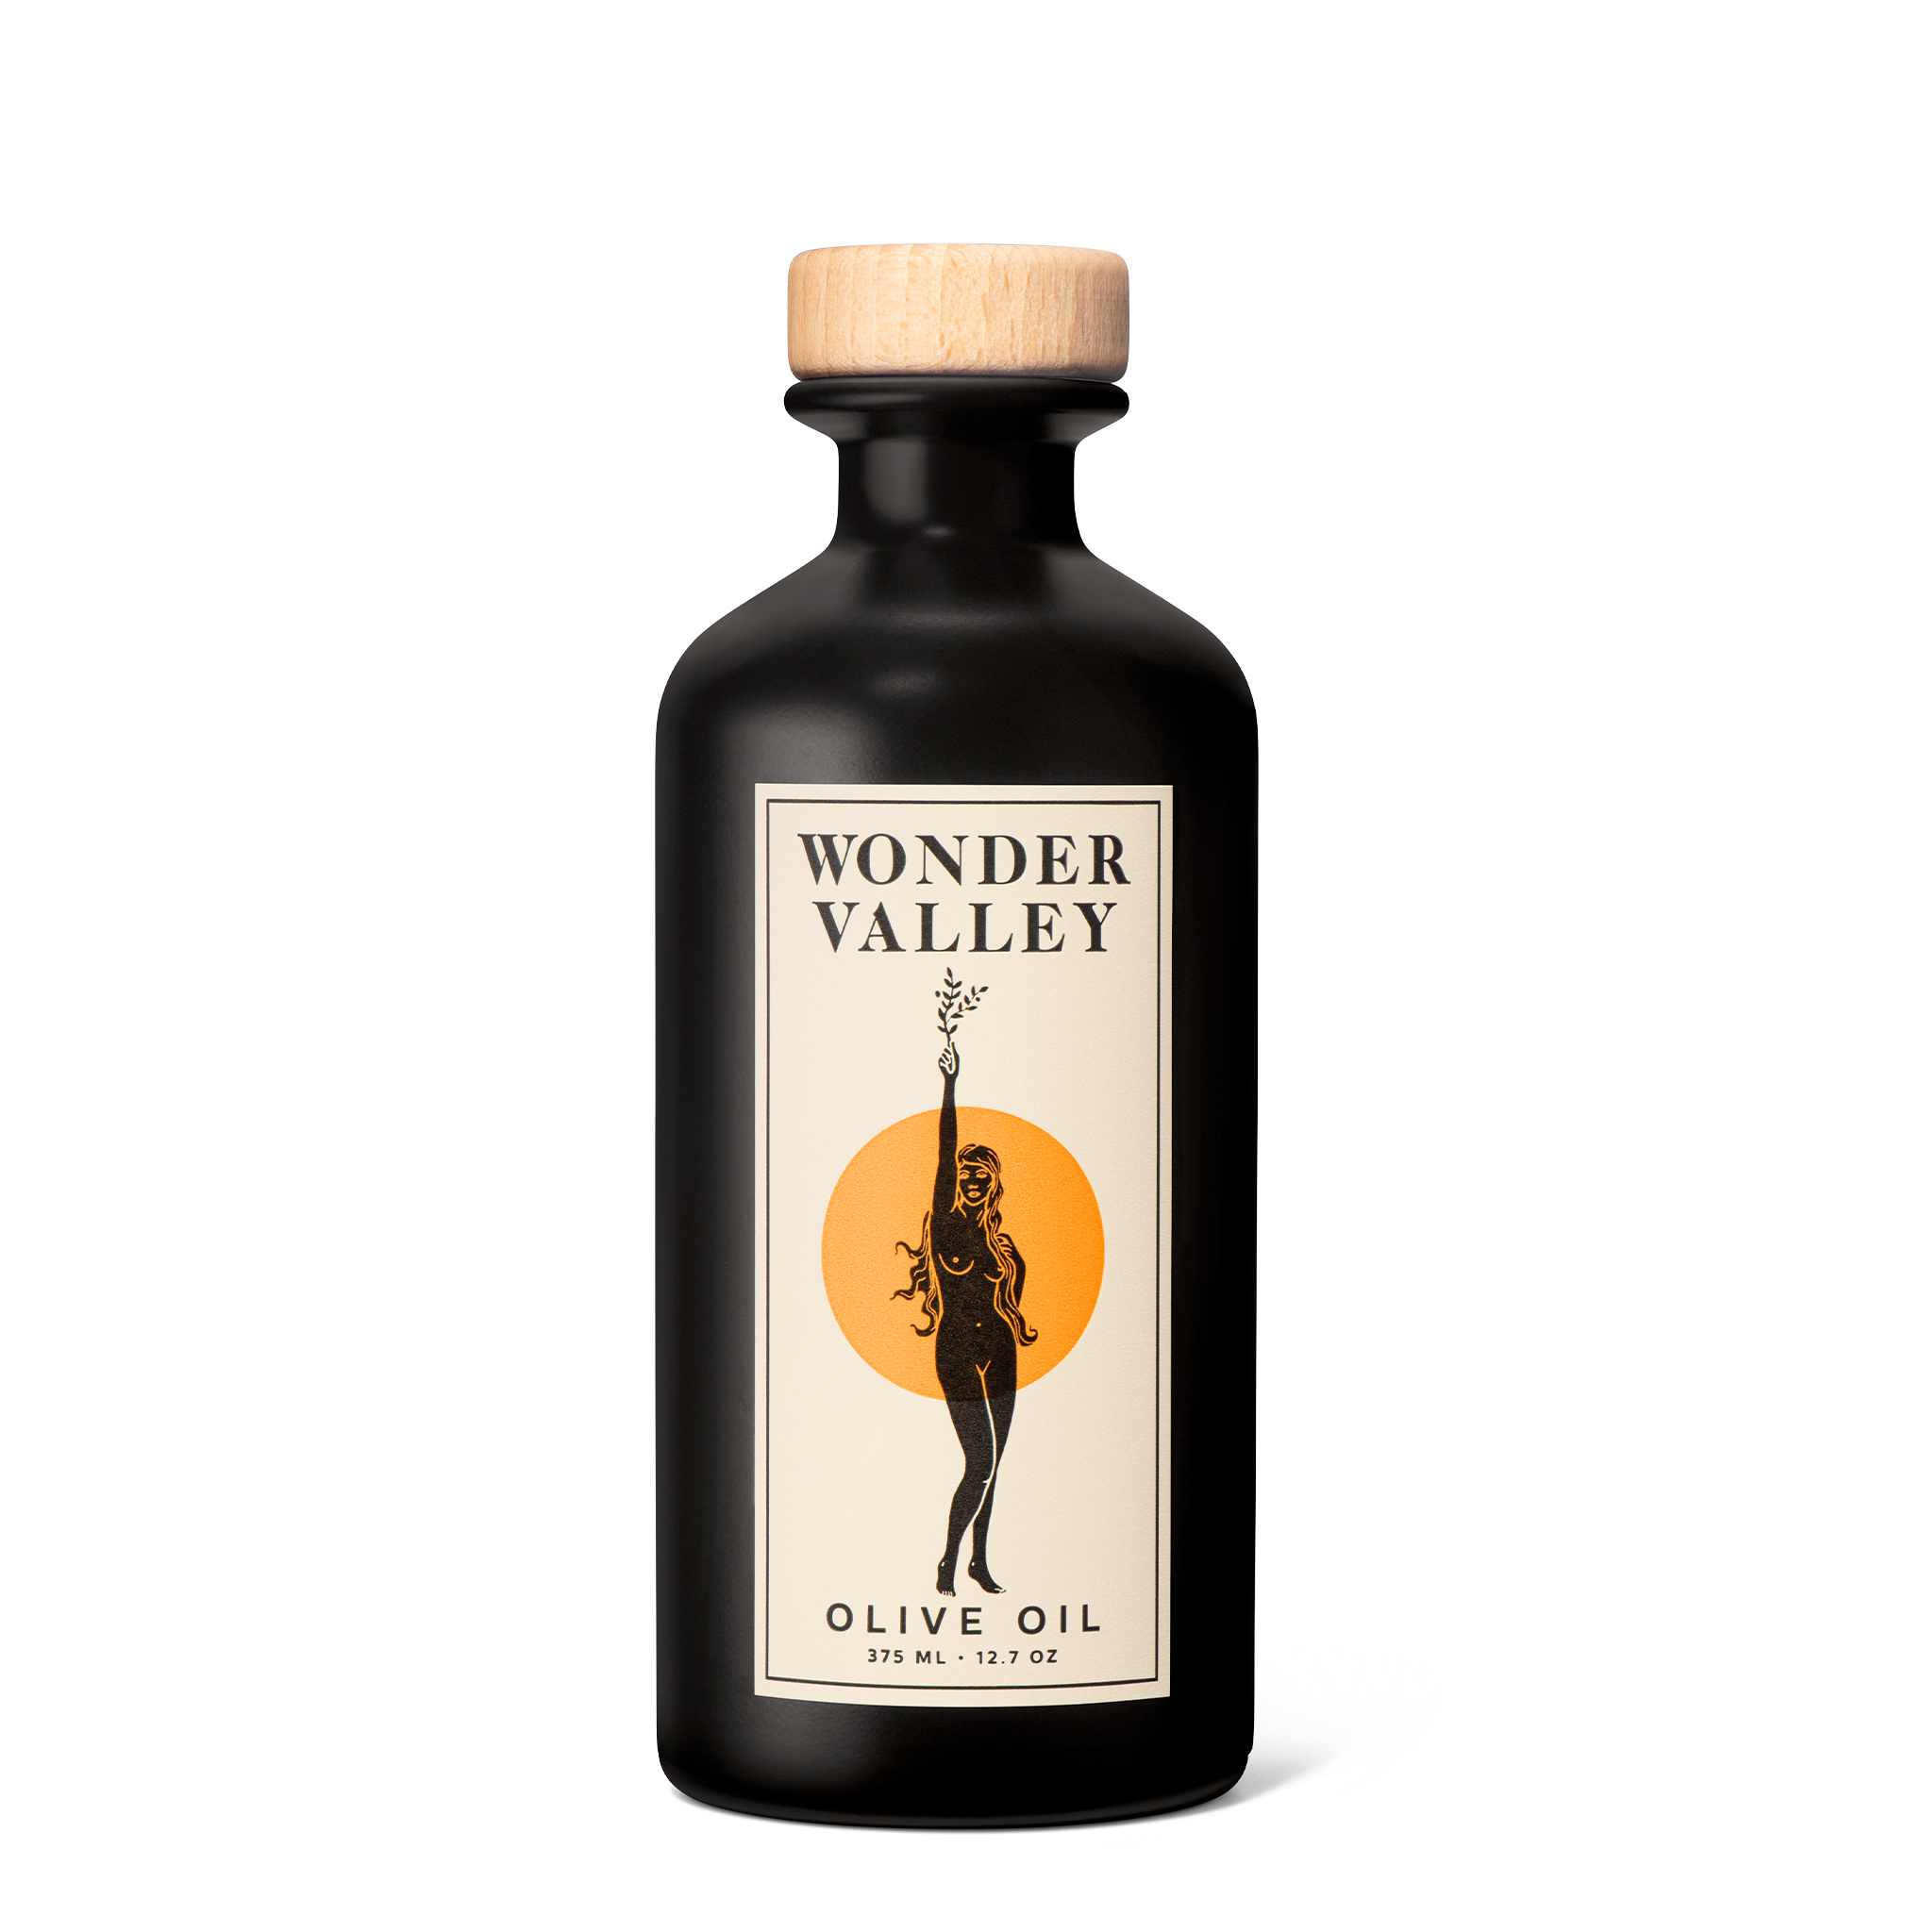 Big Olive Oil – WONDER VALLEY